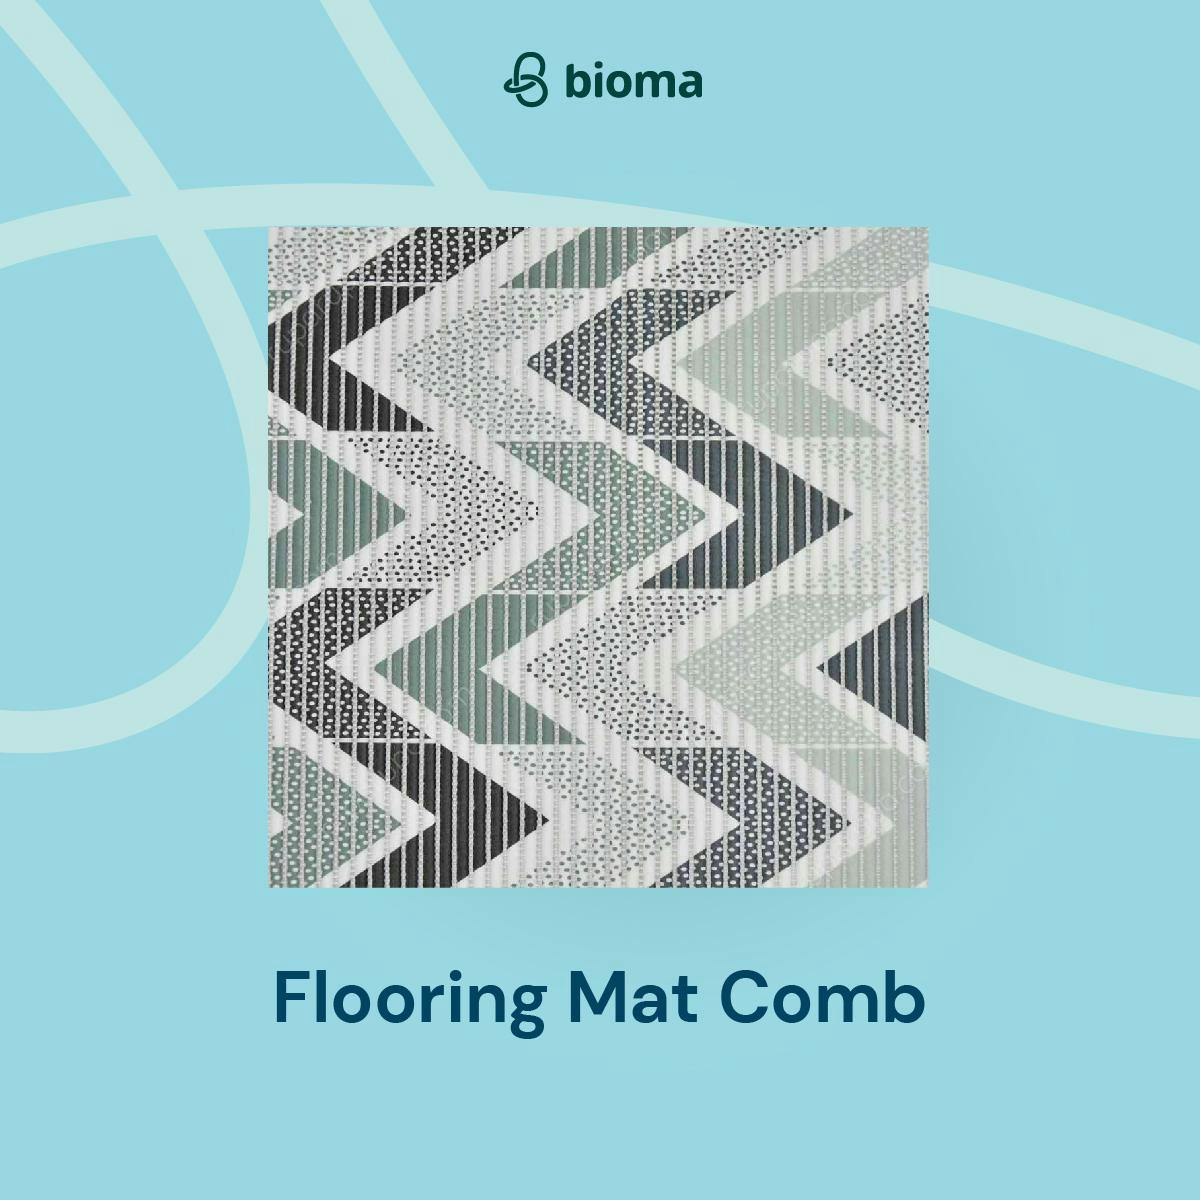 Flooring Mat Comb